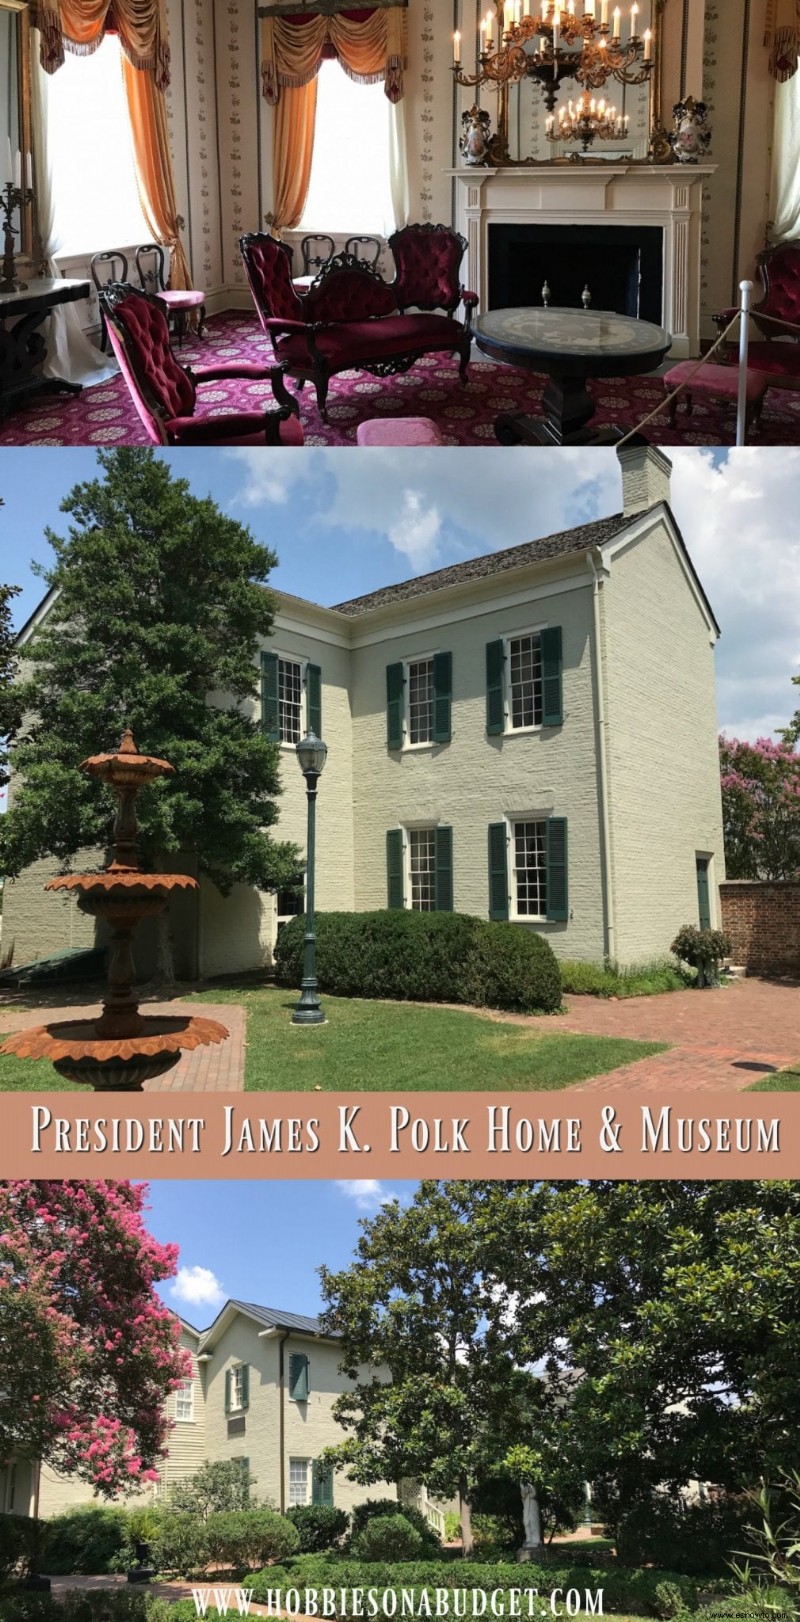 Casa y museo del presidente James K. Polk